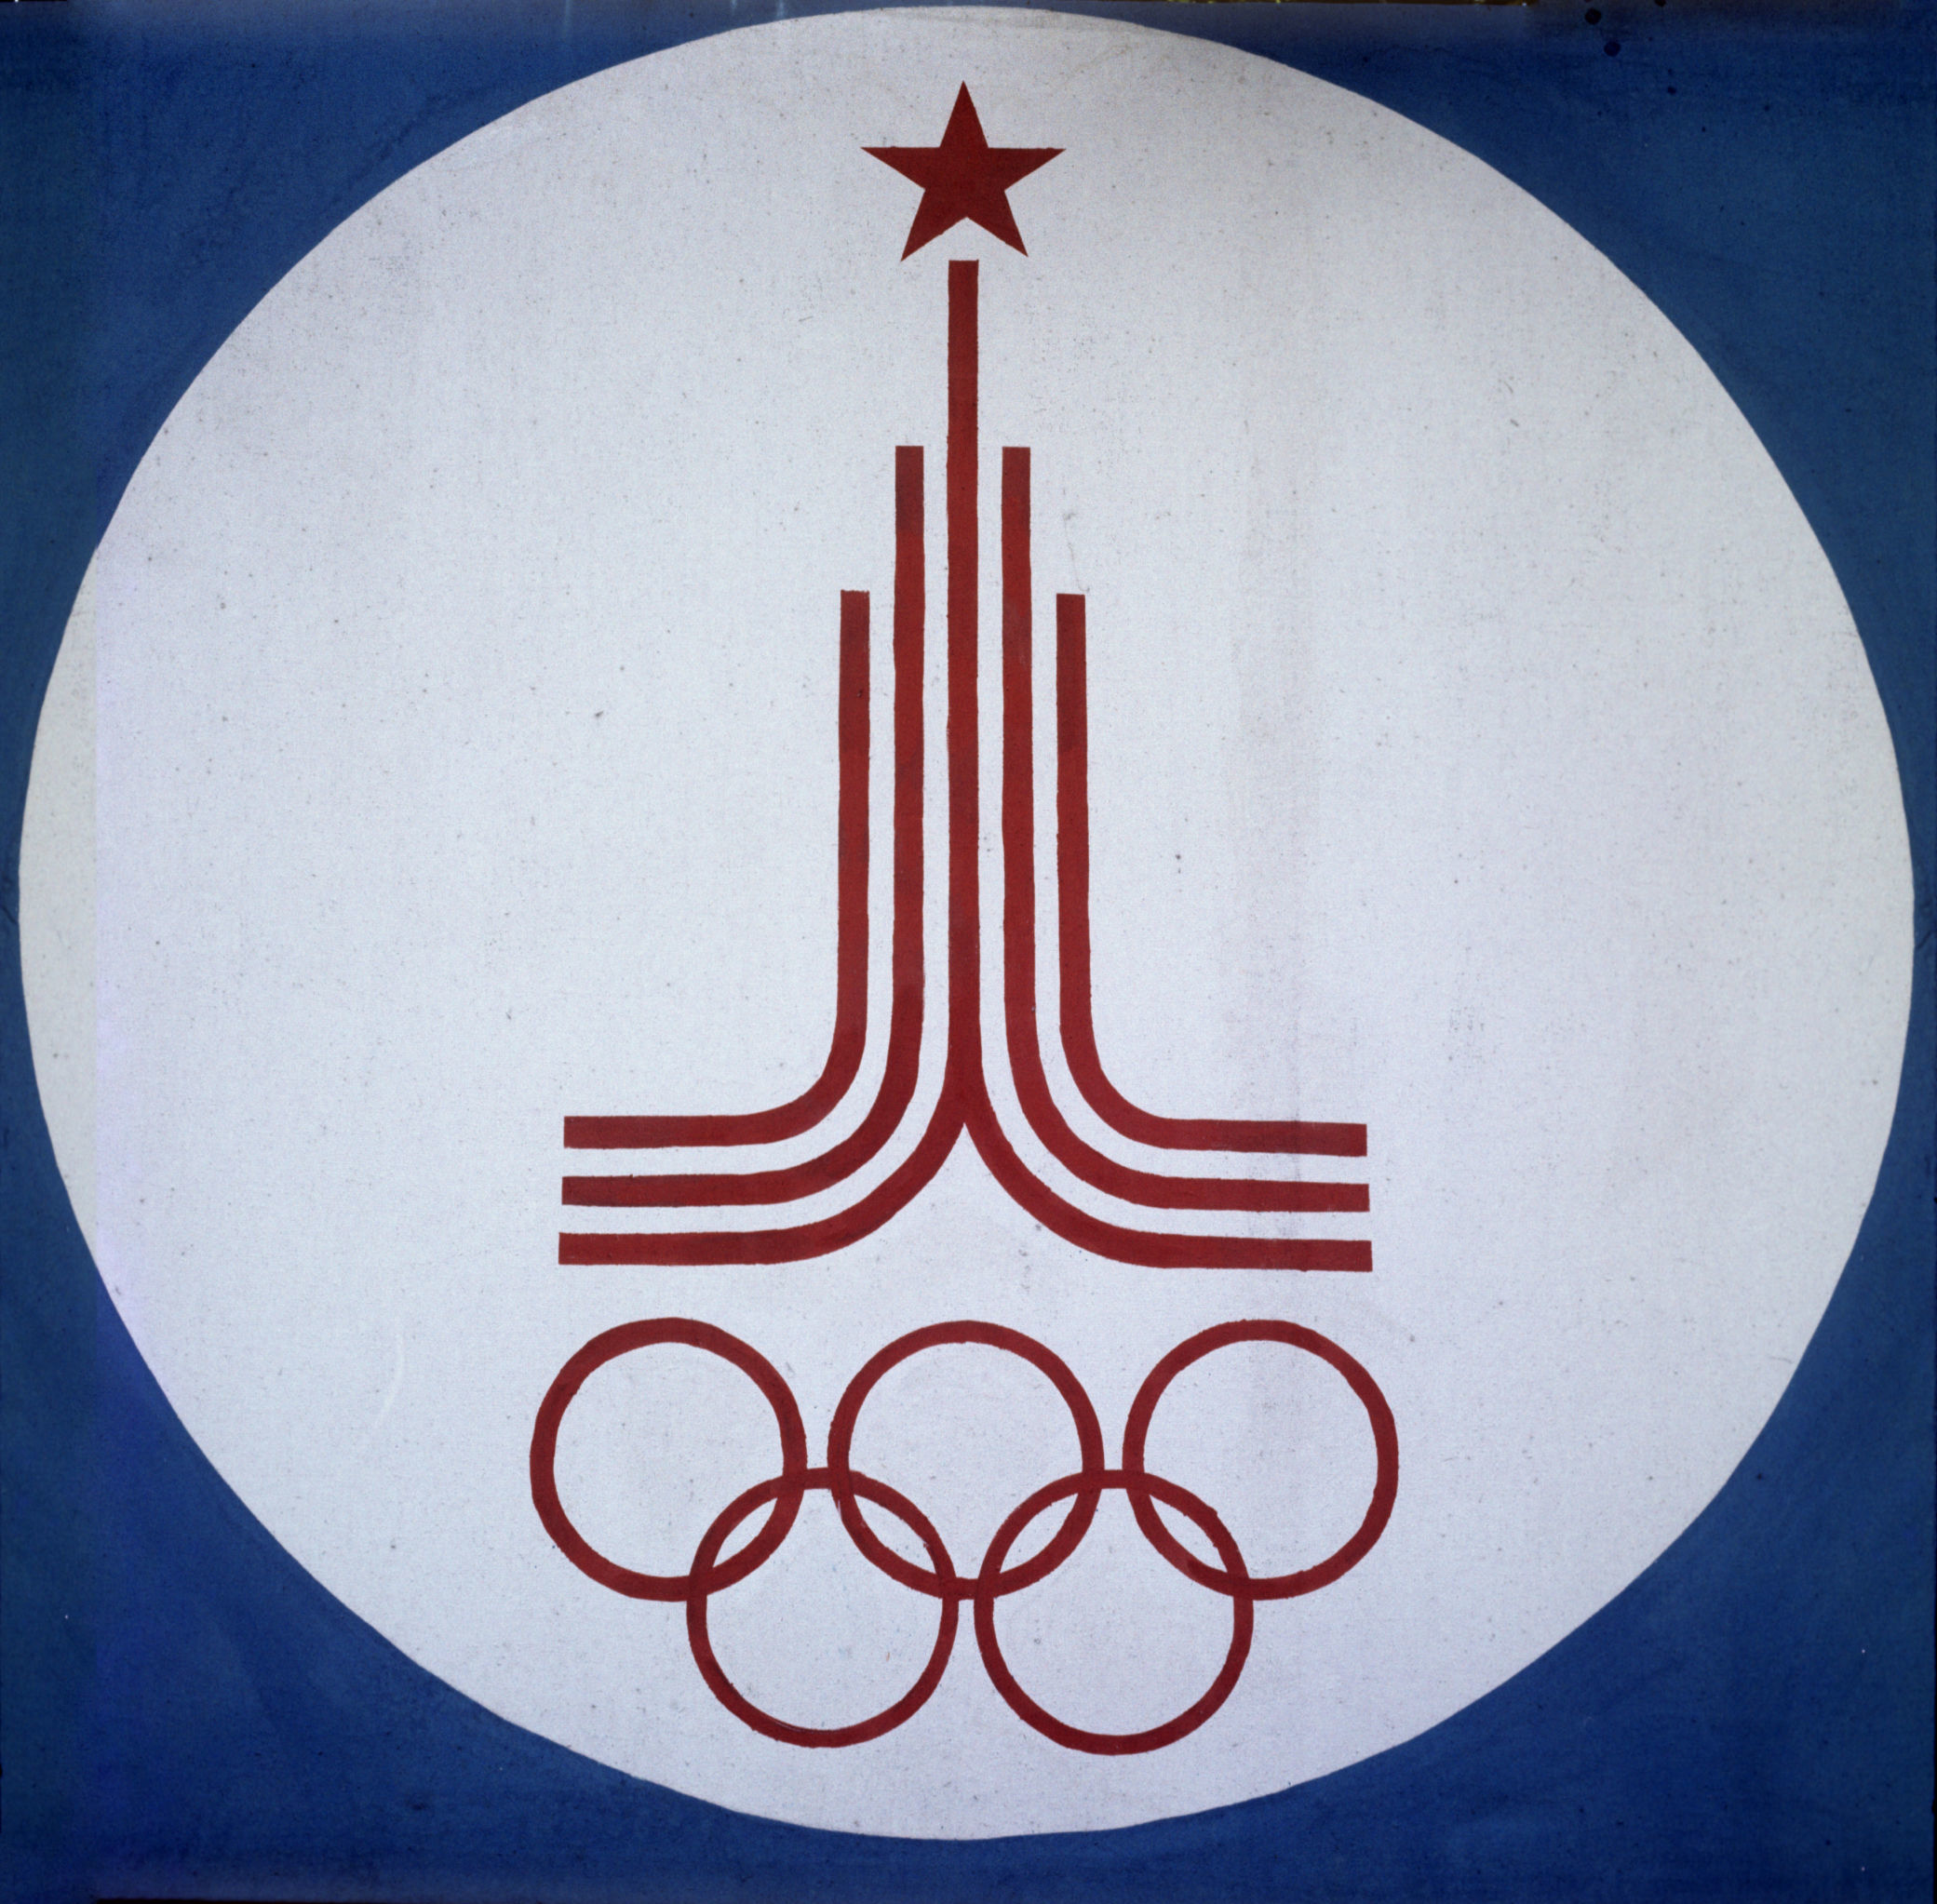 Про олимпиаду 80. Олимпийские игры 1980 года в Москве. Олимпийская символика Москва 1980.